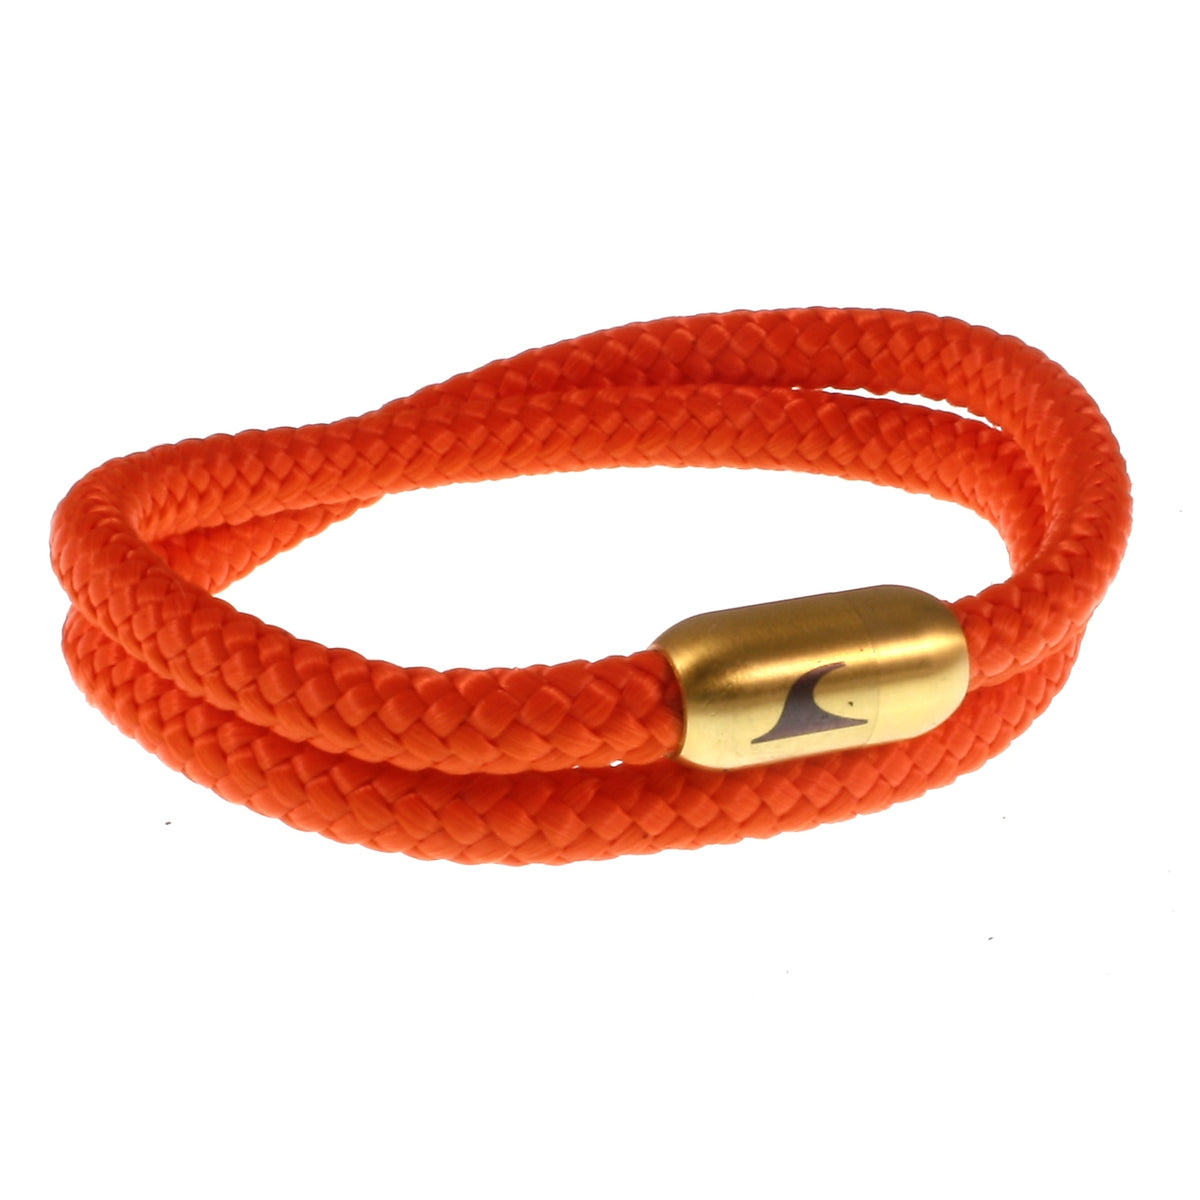 Herren-Segeltau-Armband-damen-hawaii-orange-gold-Edelstahlverschluss-vorn-wavepirate-shop-st